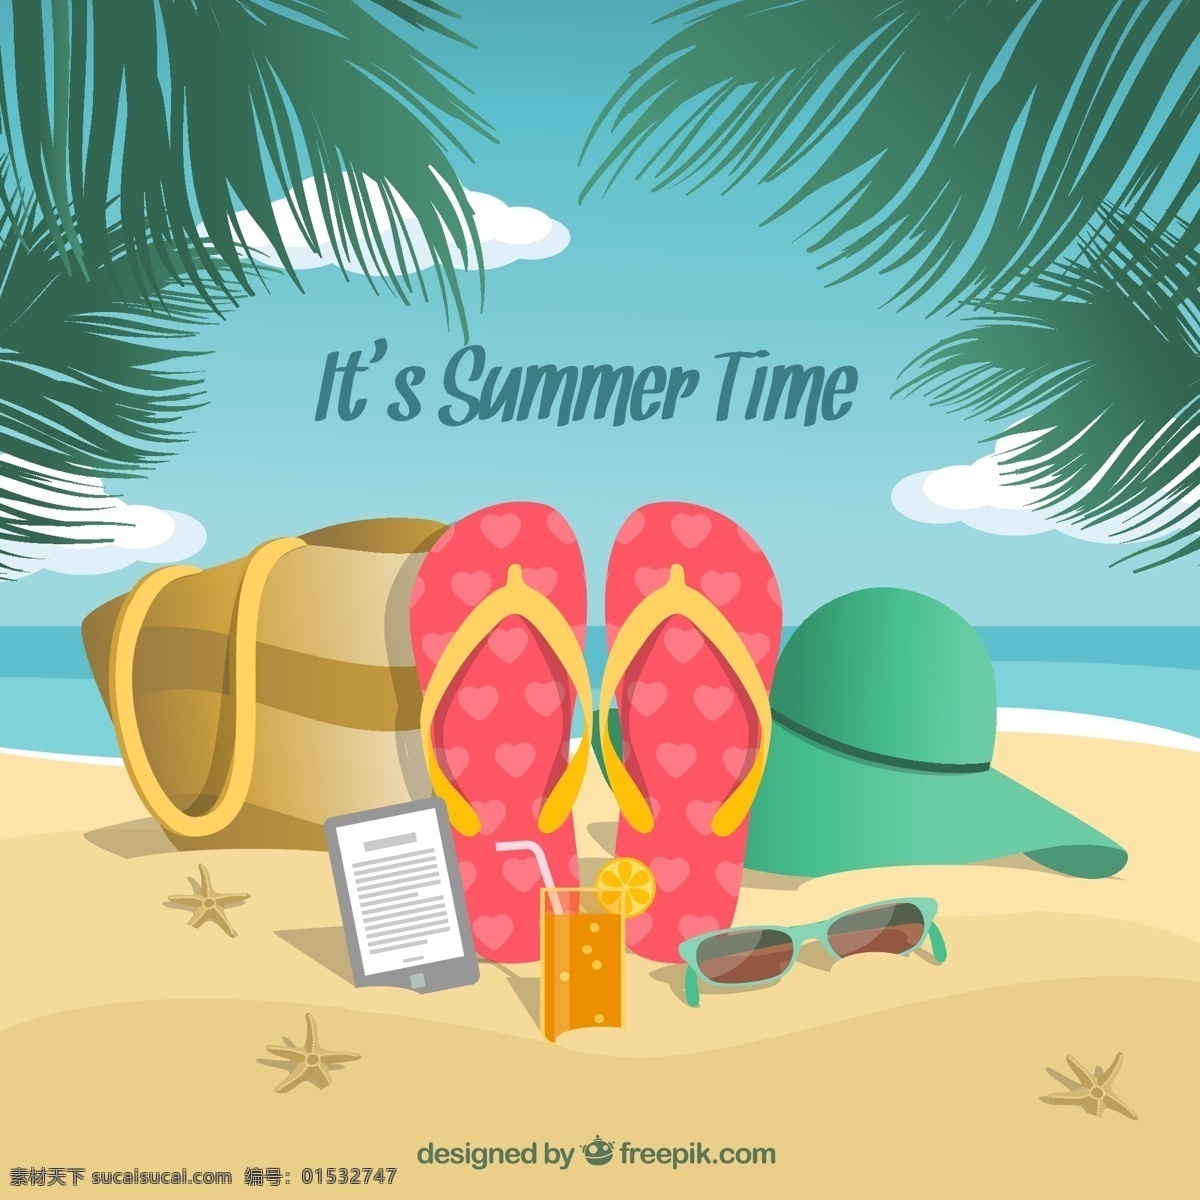 沙滩 度假 插画 矢量图 椰子树 夏季 手机 太阳镜 海星 鸡尾酒 云朵 大海 沙滩拖鞋 太阳帽